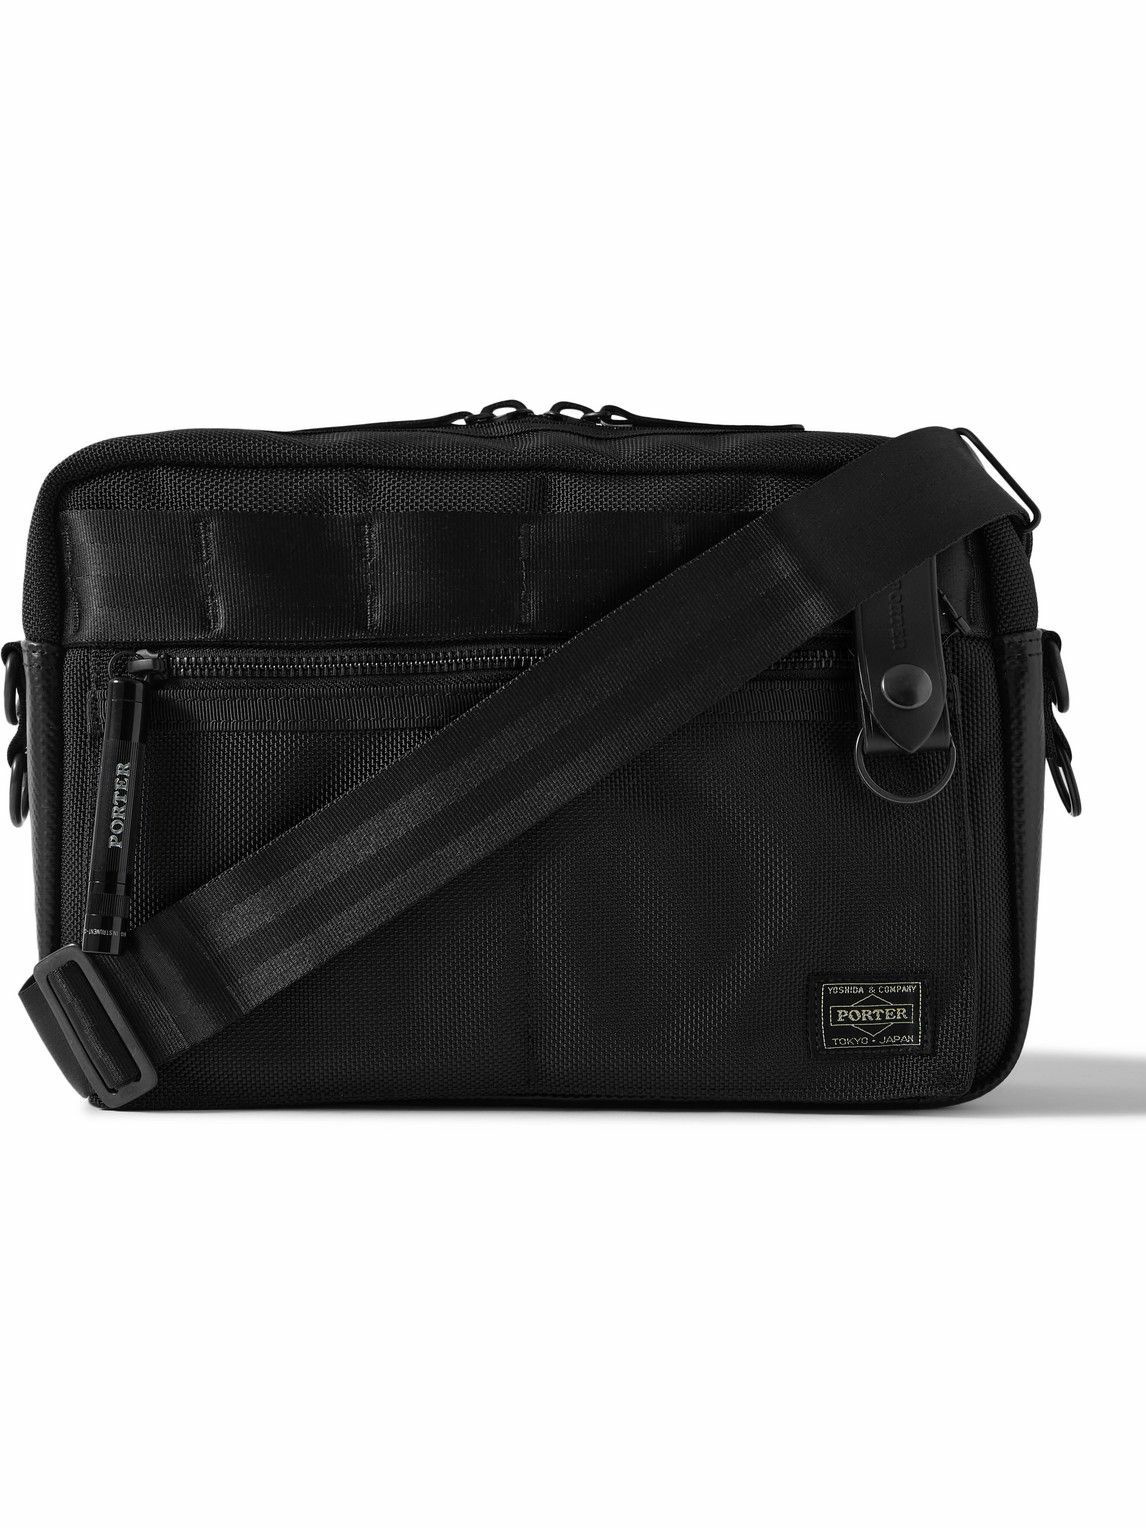 Porter-Yoshida & Co - Tanker Nylon Messenger Bag - Black Porter